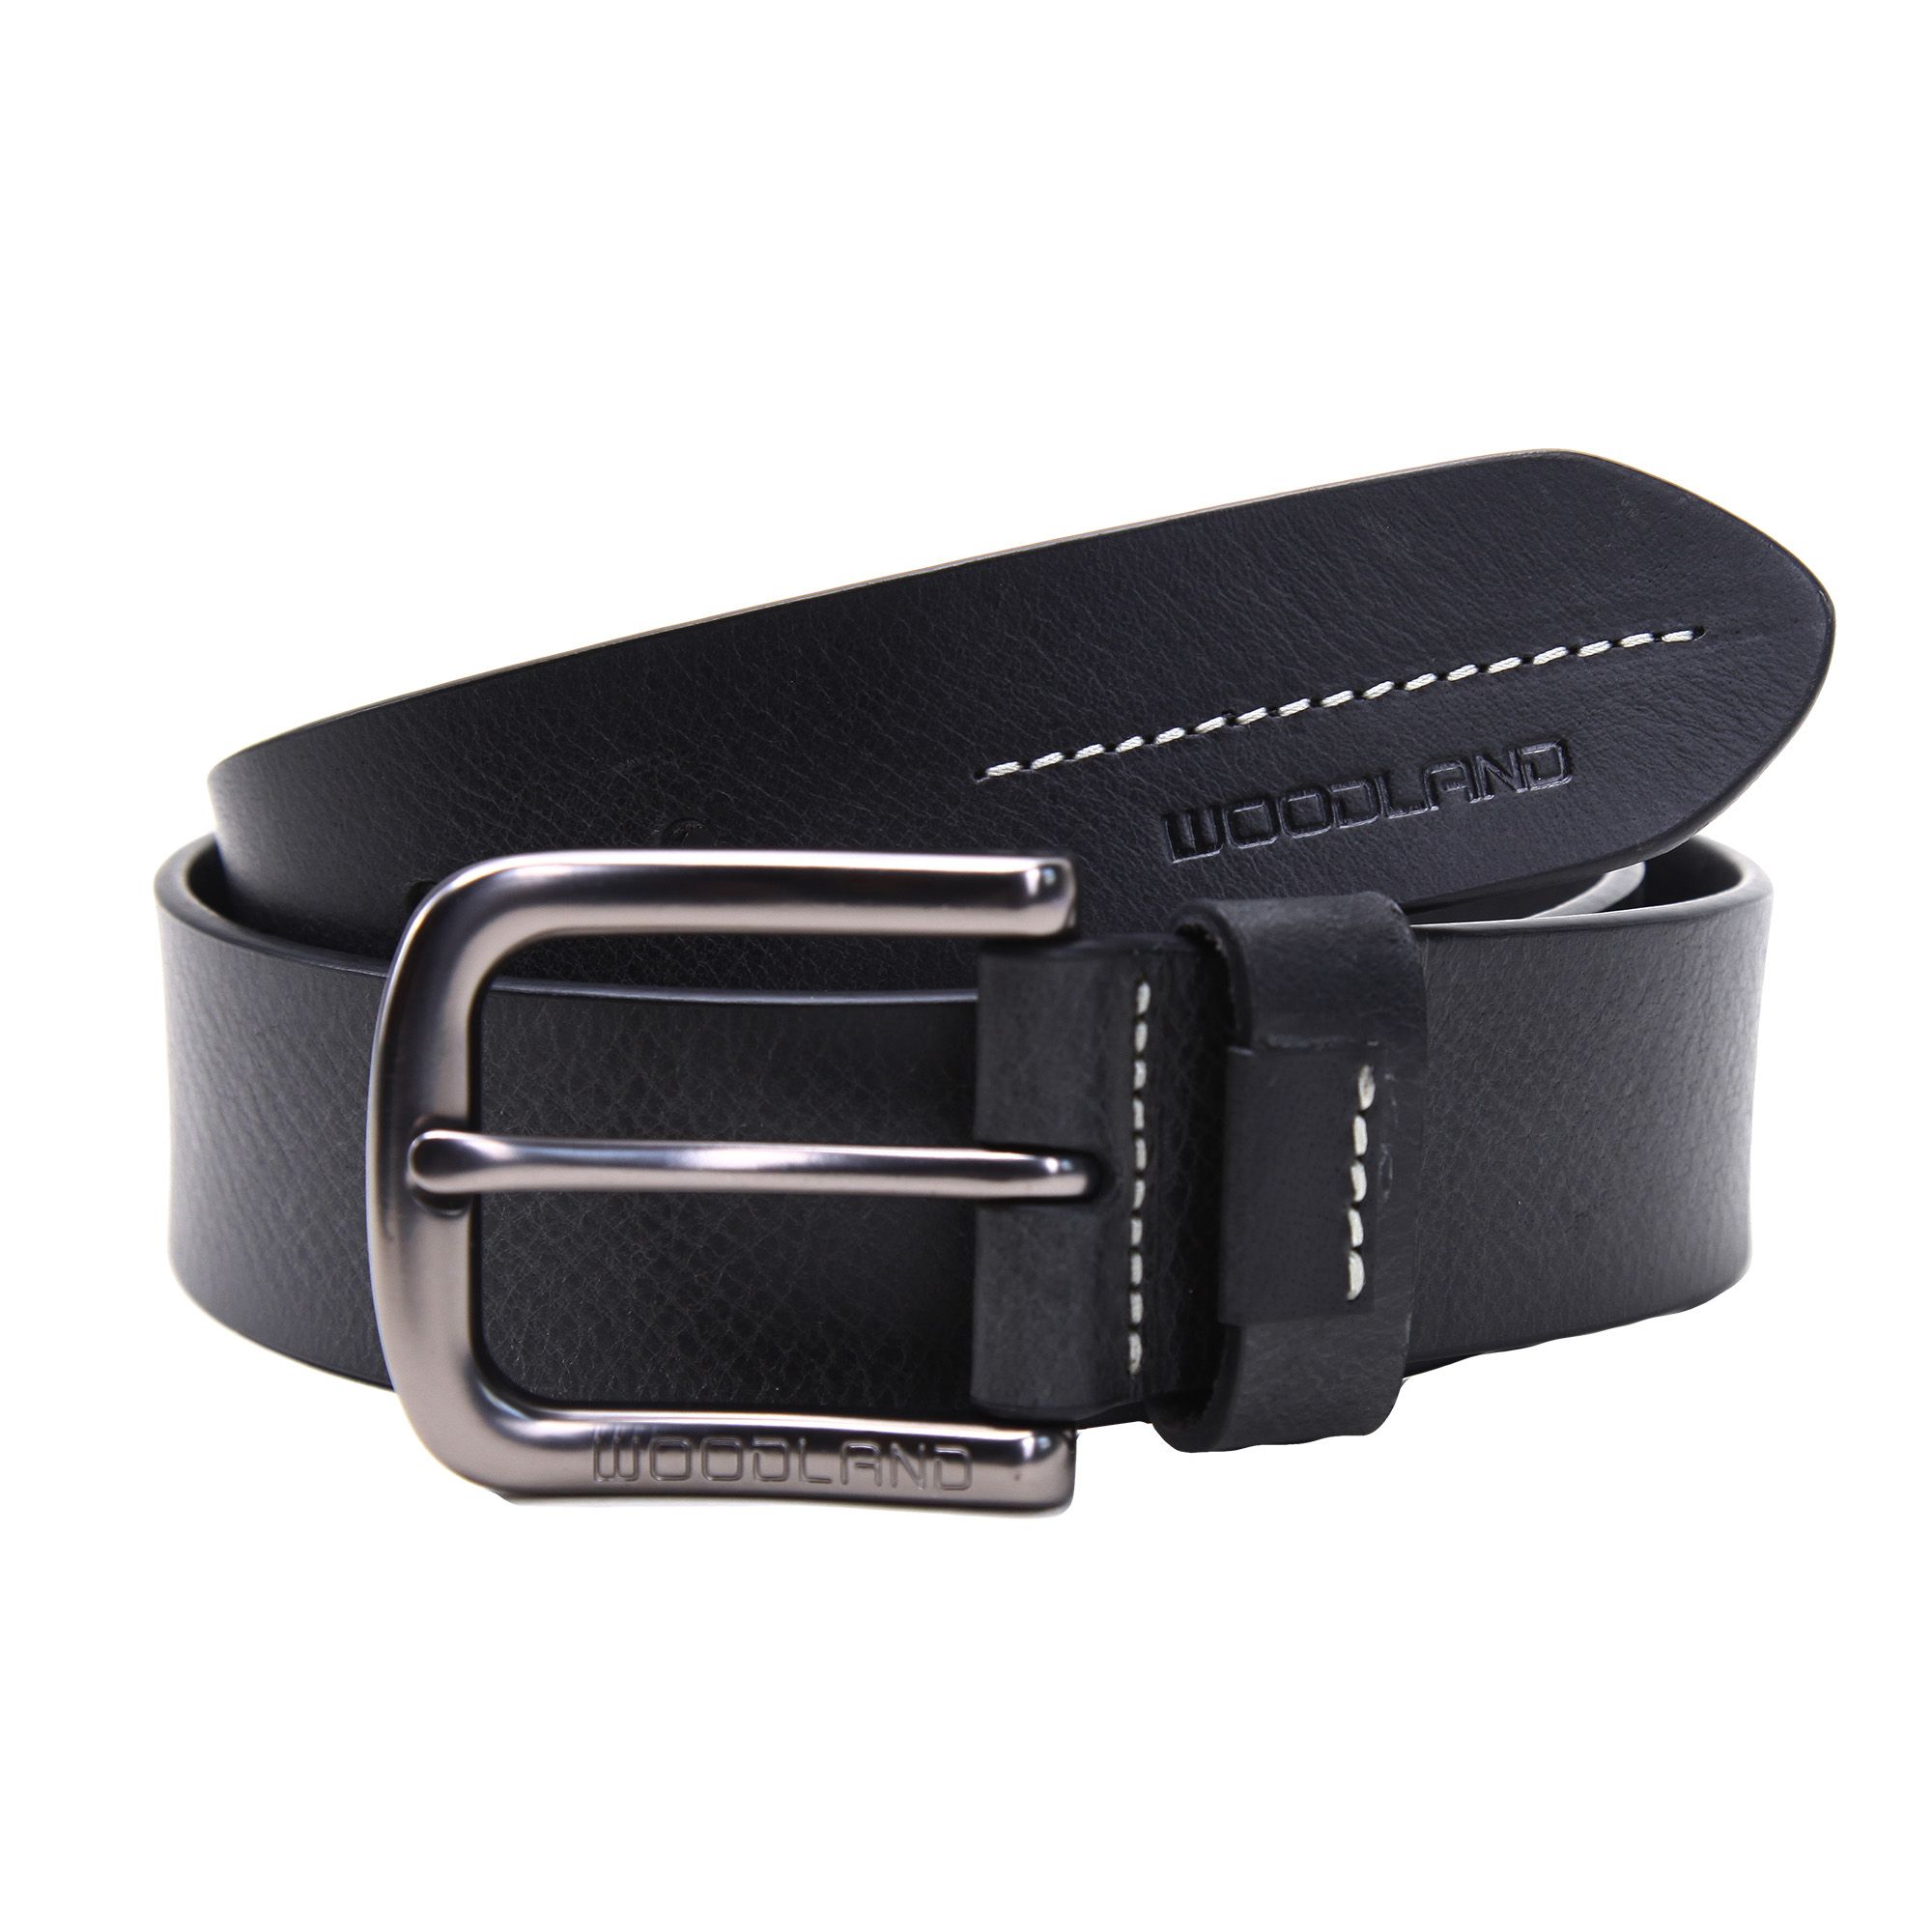 Black Leather Belt for Men